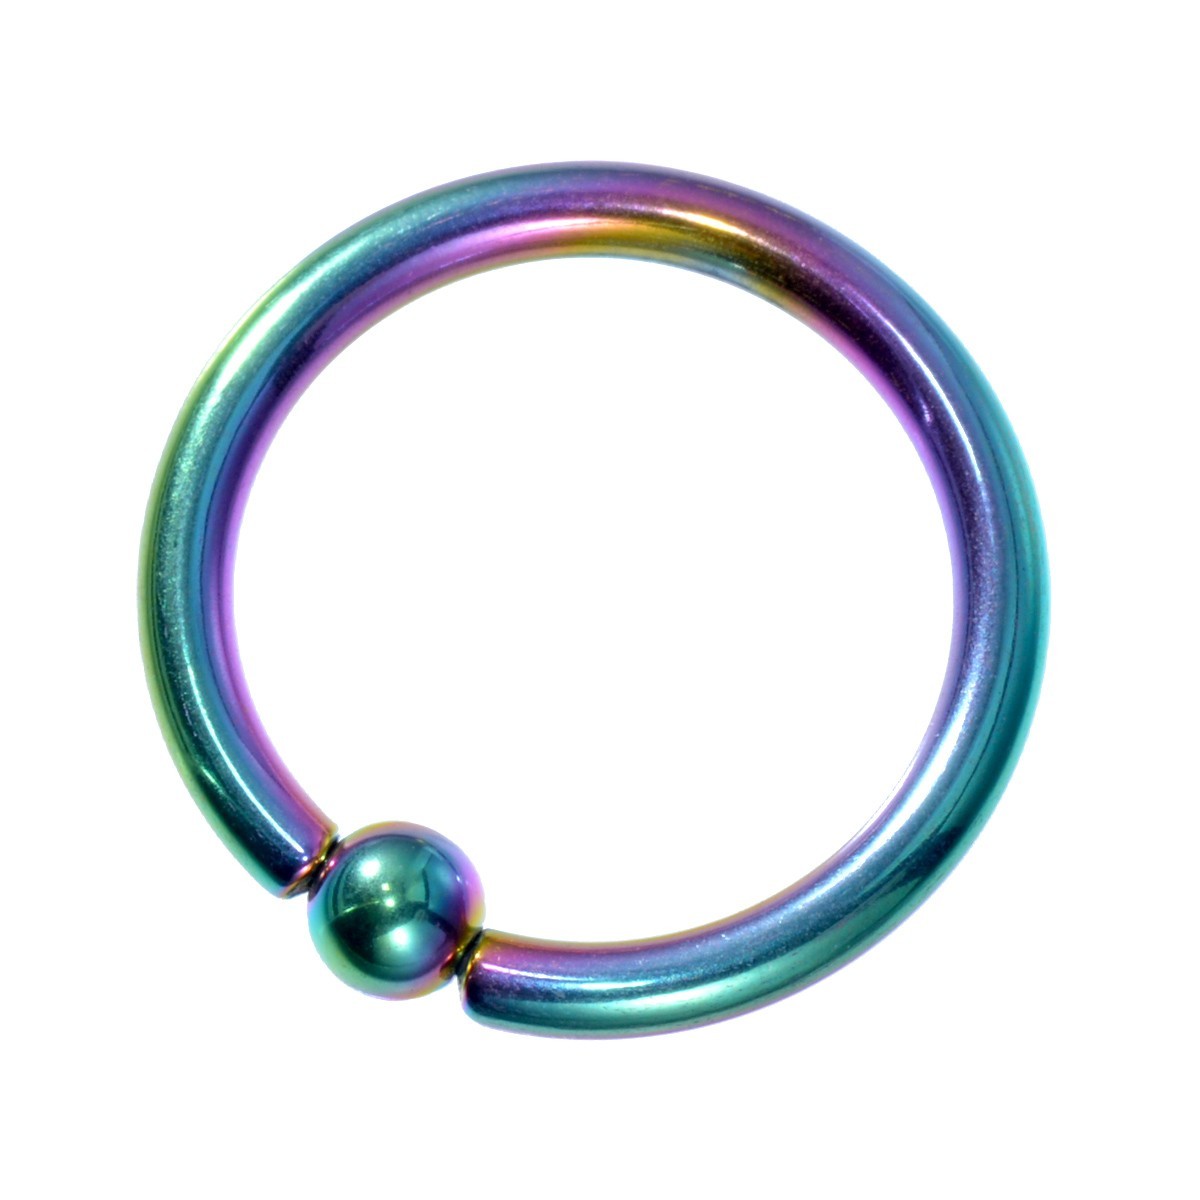 [ продажа по отдельности /1 шт ] пирсинги titanium колпак tib бисер кольцо standard body серьги 14 мера внутренний диаметр 12.0mm мяч 3.0mm радуга цвет 